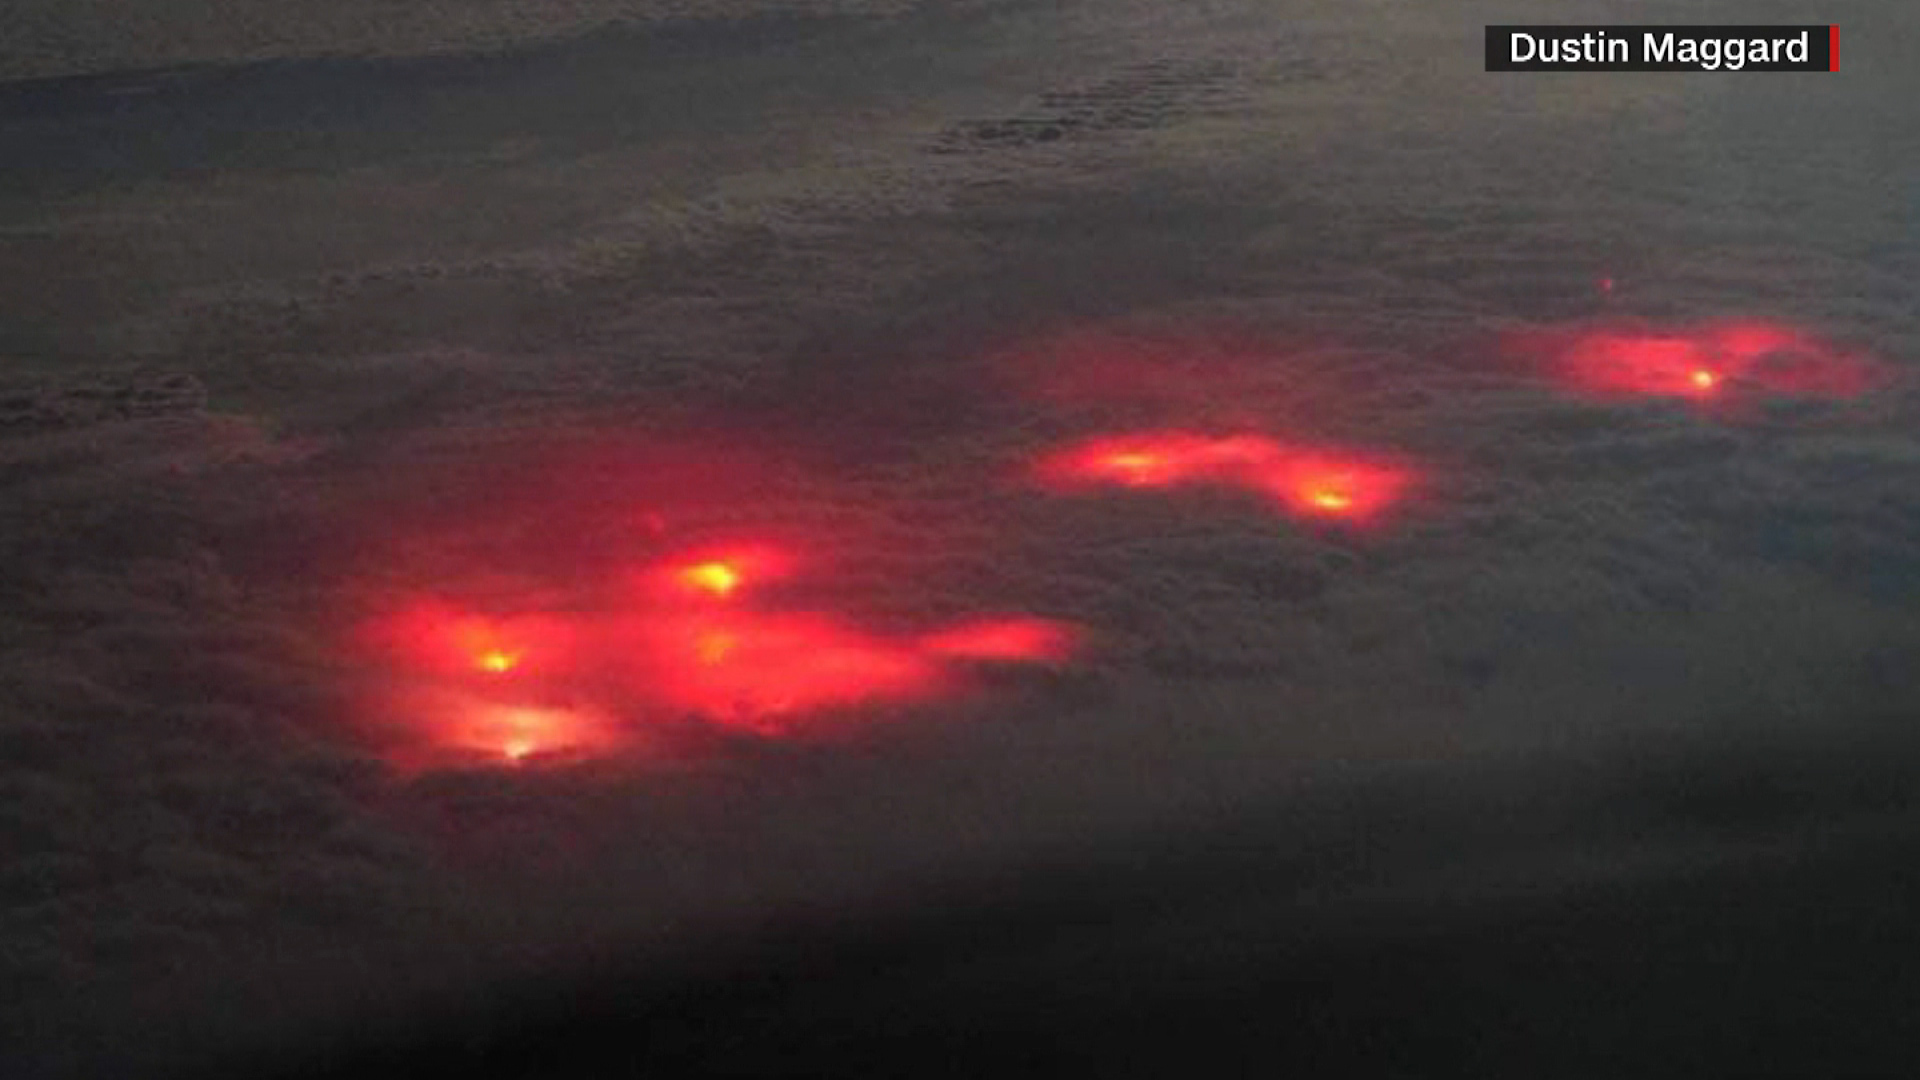 El misterio de estas luces rojas en el océano Pacífico desafía a internet:  ¿qué son exactamente? - CNN Video